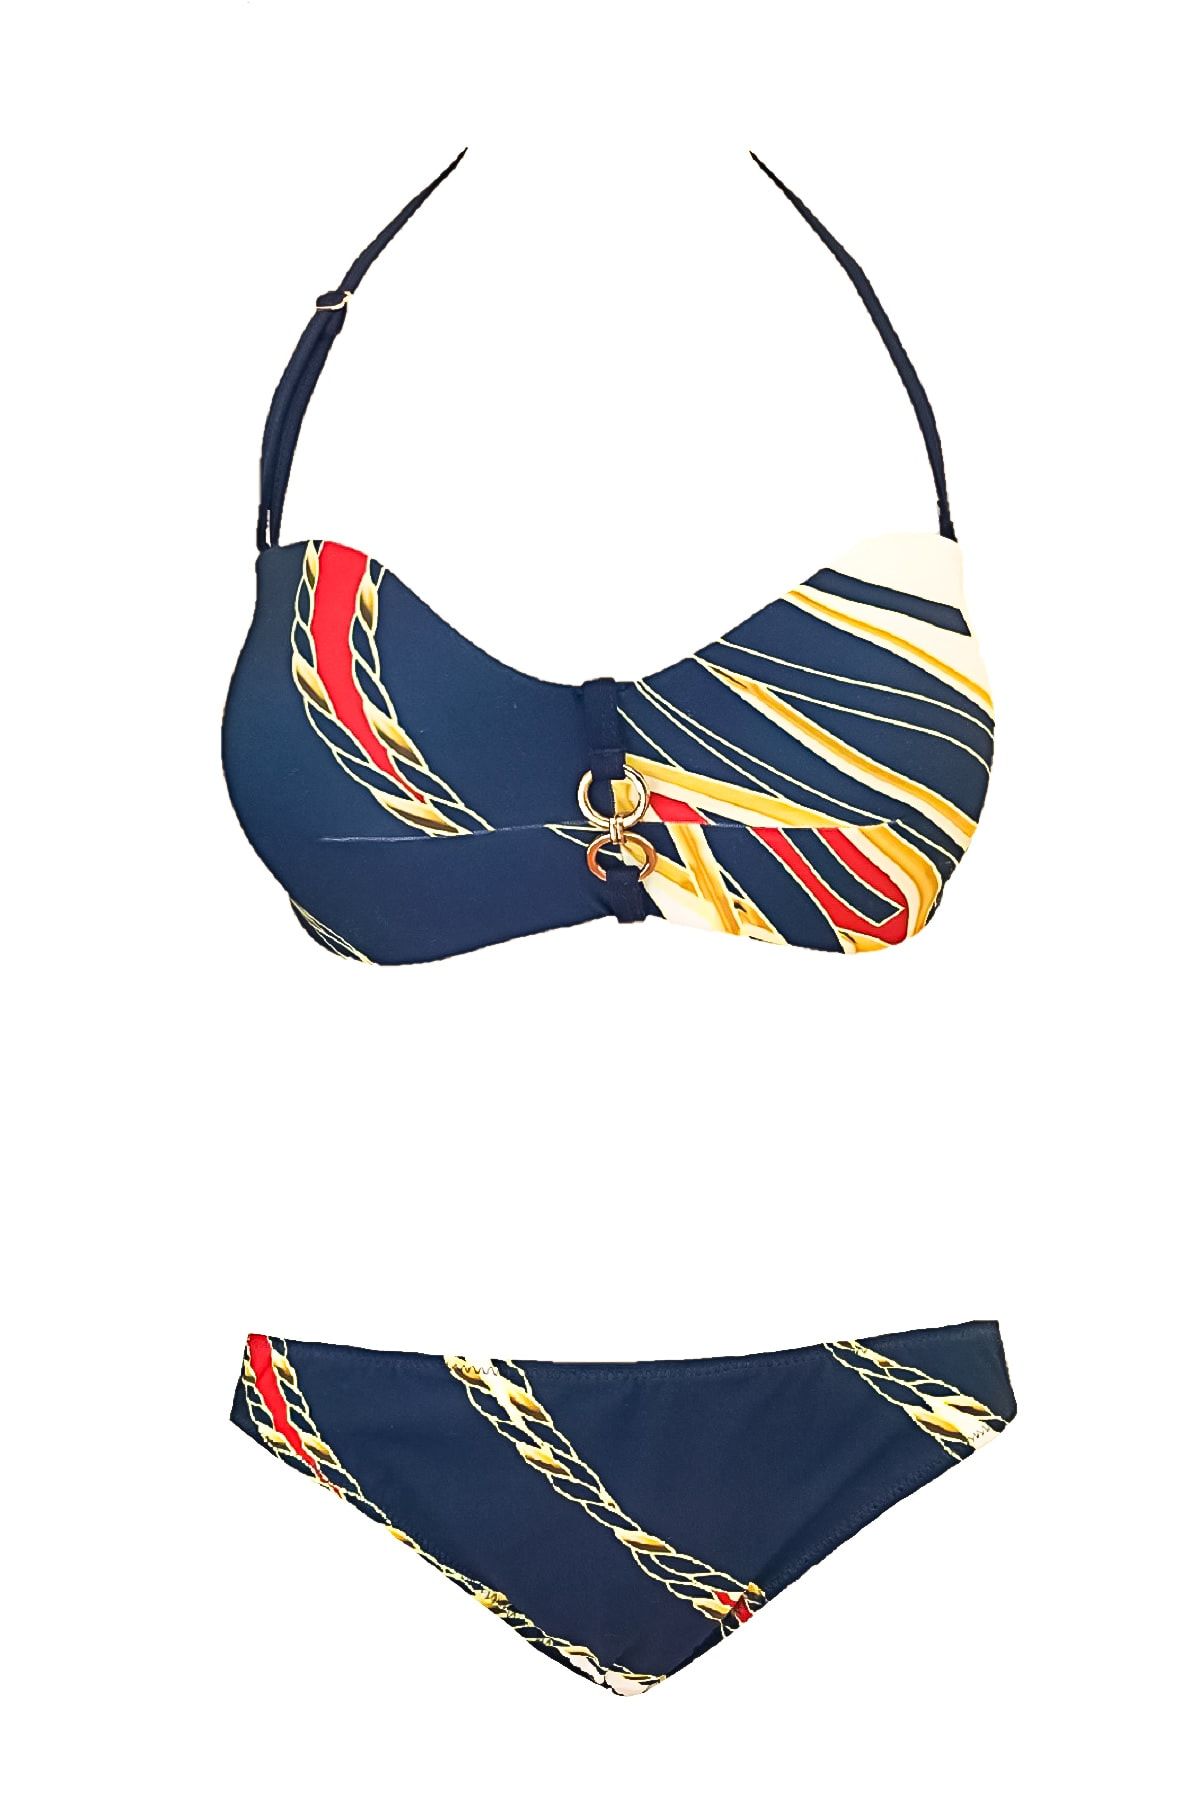 Blackspade Desteksiz Balensiz Straplez Bikini Takımı Marine Desenli Lacivert